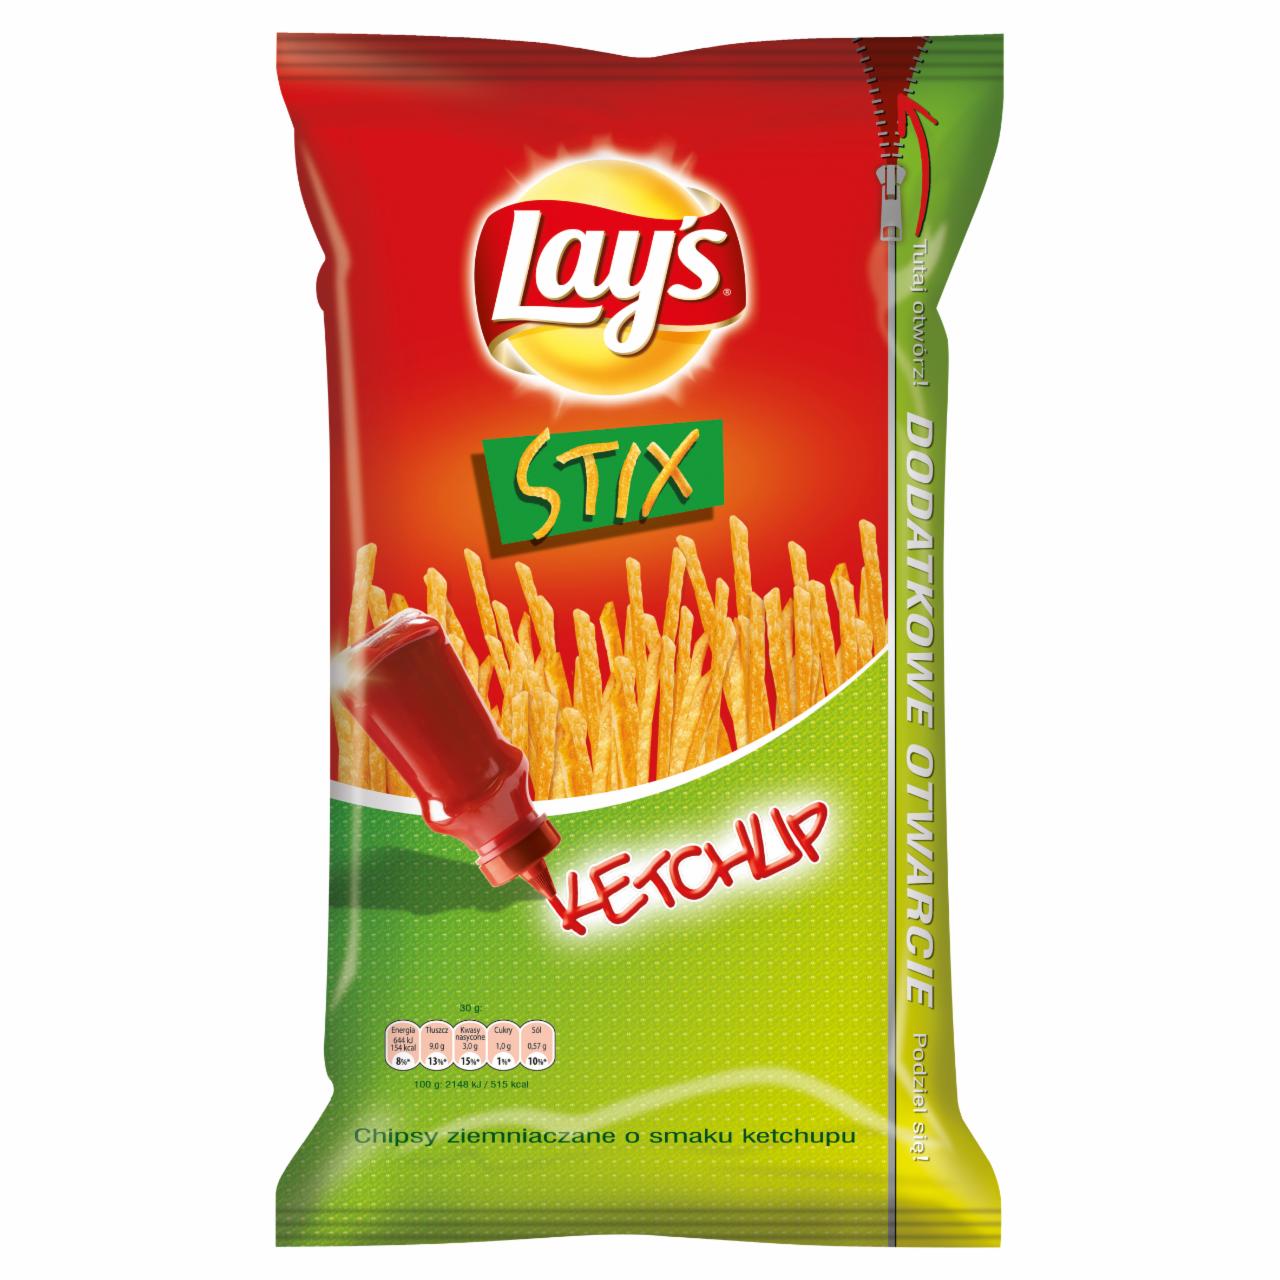 Zdjęcia - Lay's Stix Ketchup Chipsy ziemniaczane 160 g